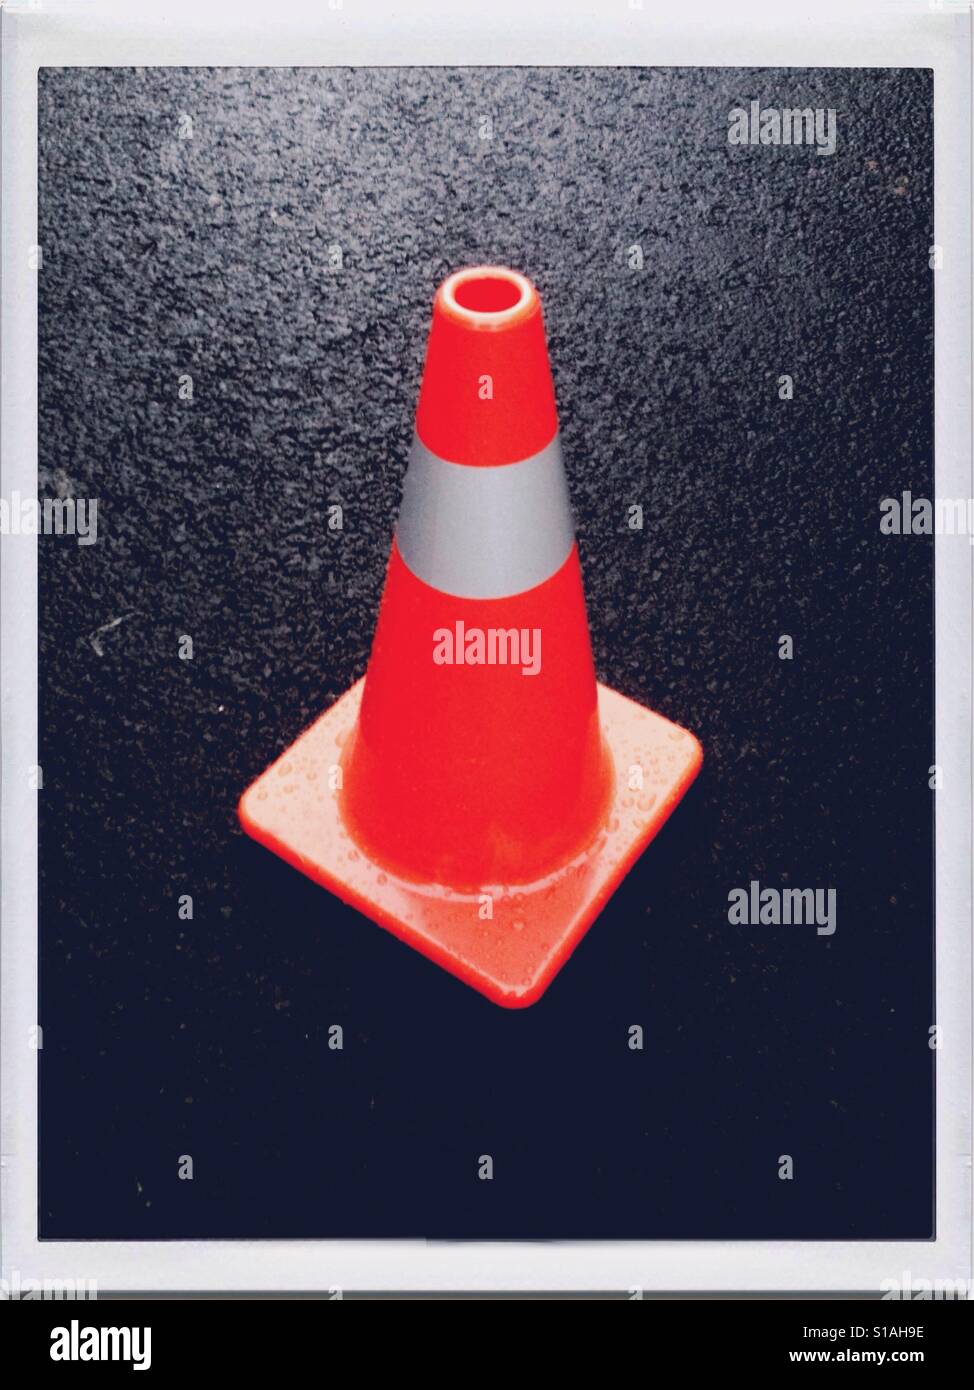 One Traffic Conse / pylons / road cones / highway cones / construction cones / safety cones Stock Photo